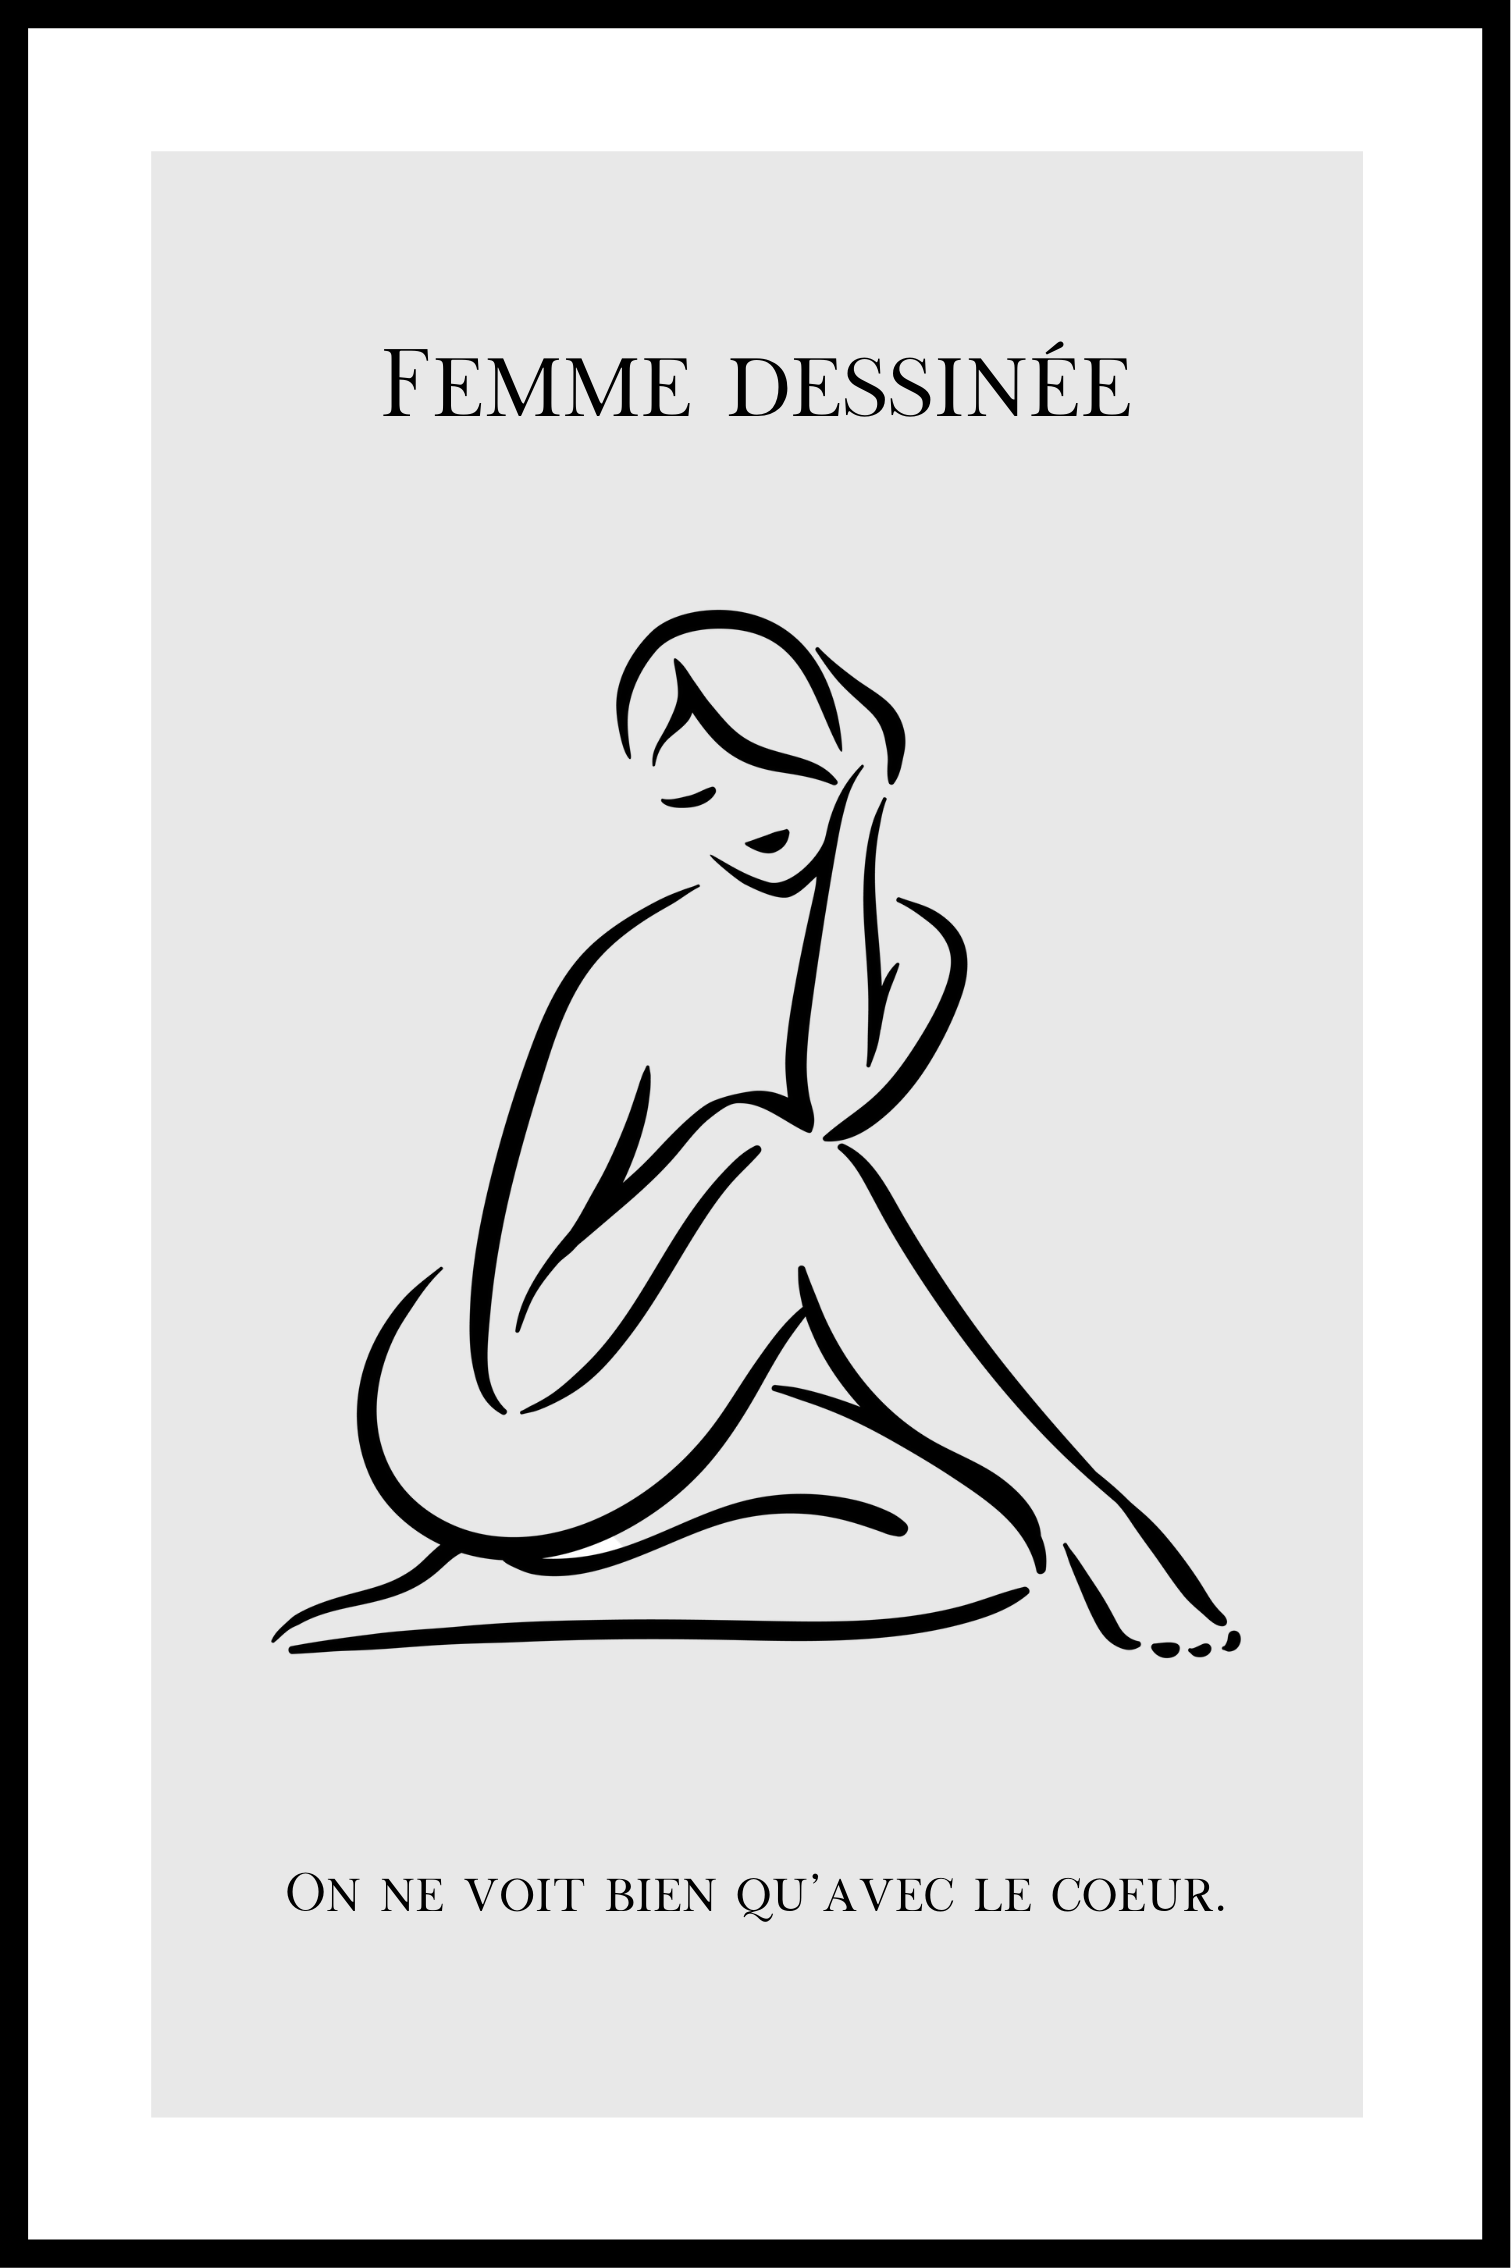 Femme dessinée No. I affisch